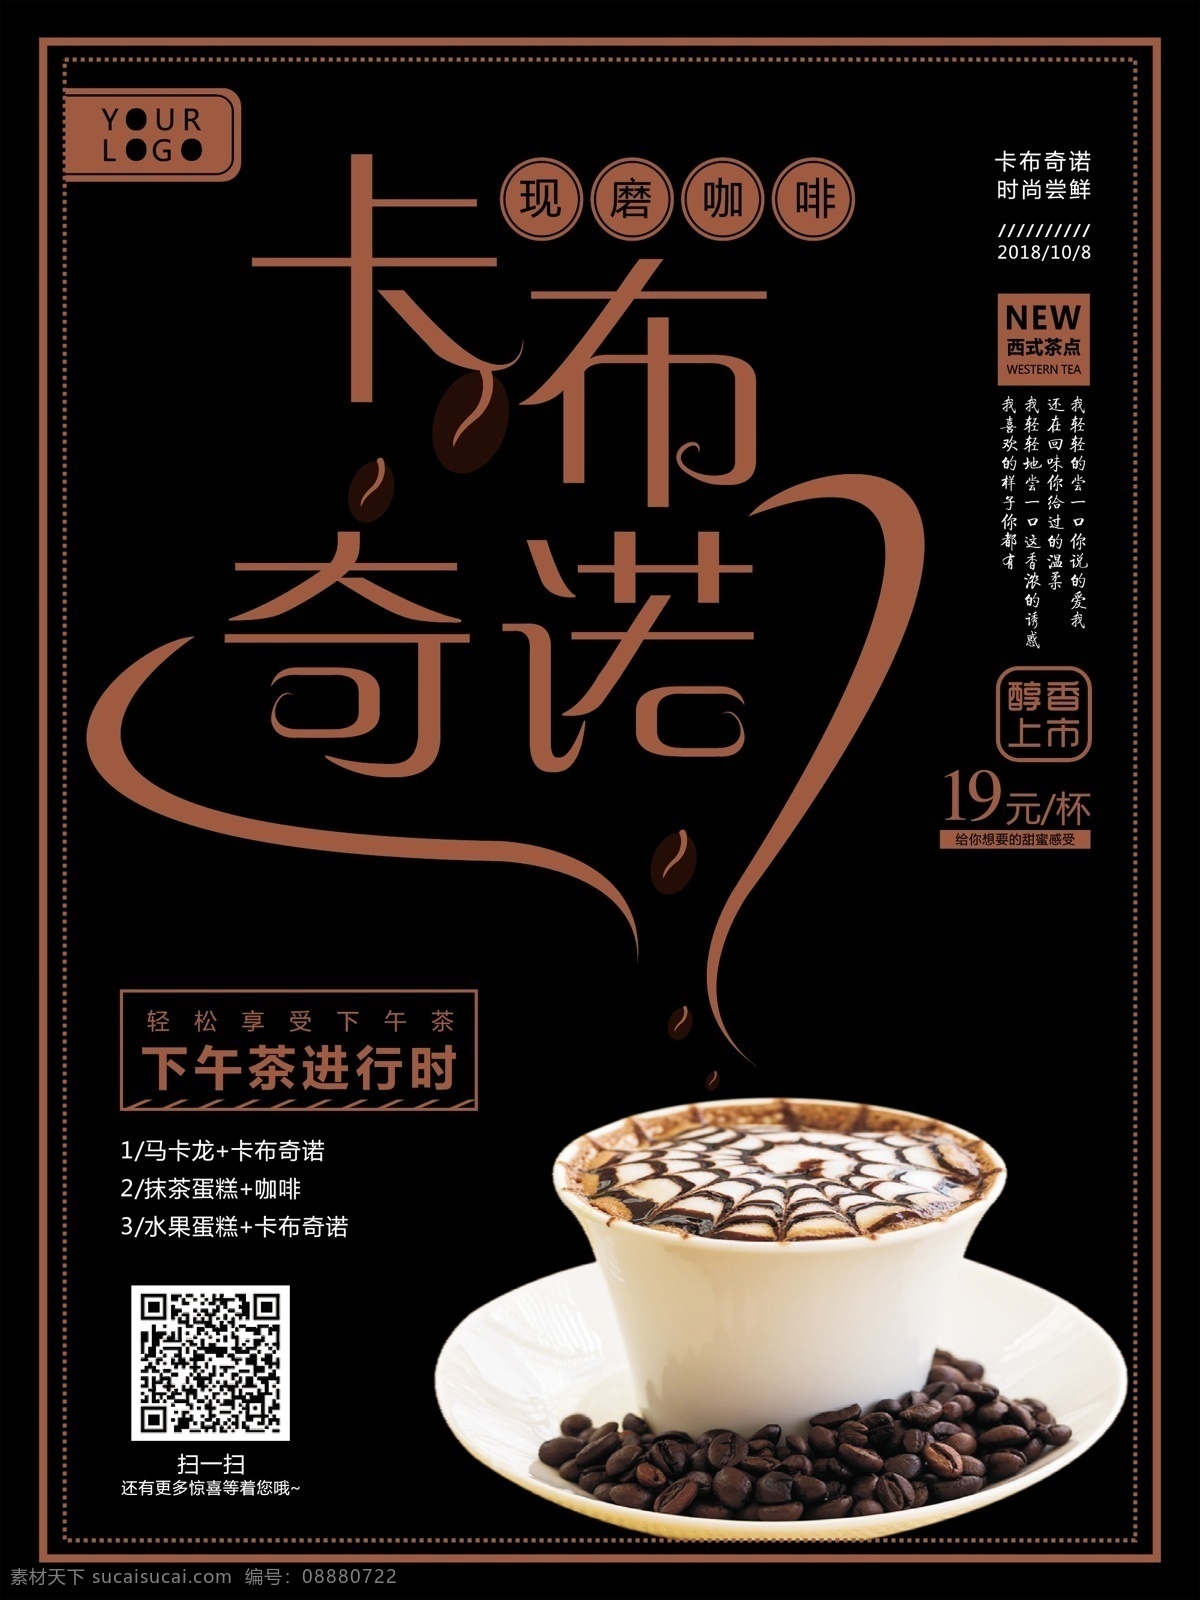 卡布 奇诺 咖啡 饮品 奶茶店 海报 卡布奇诺 现磨咖啡 打折促销海报